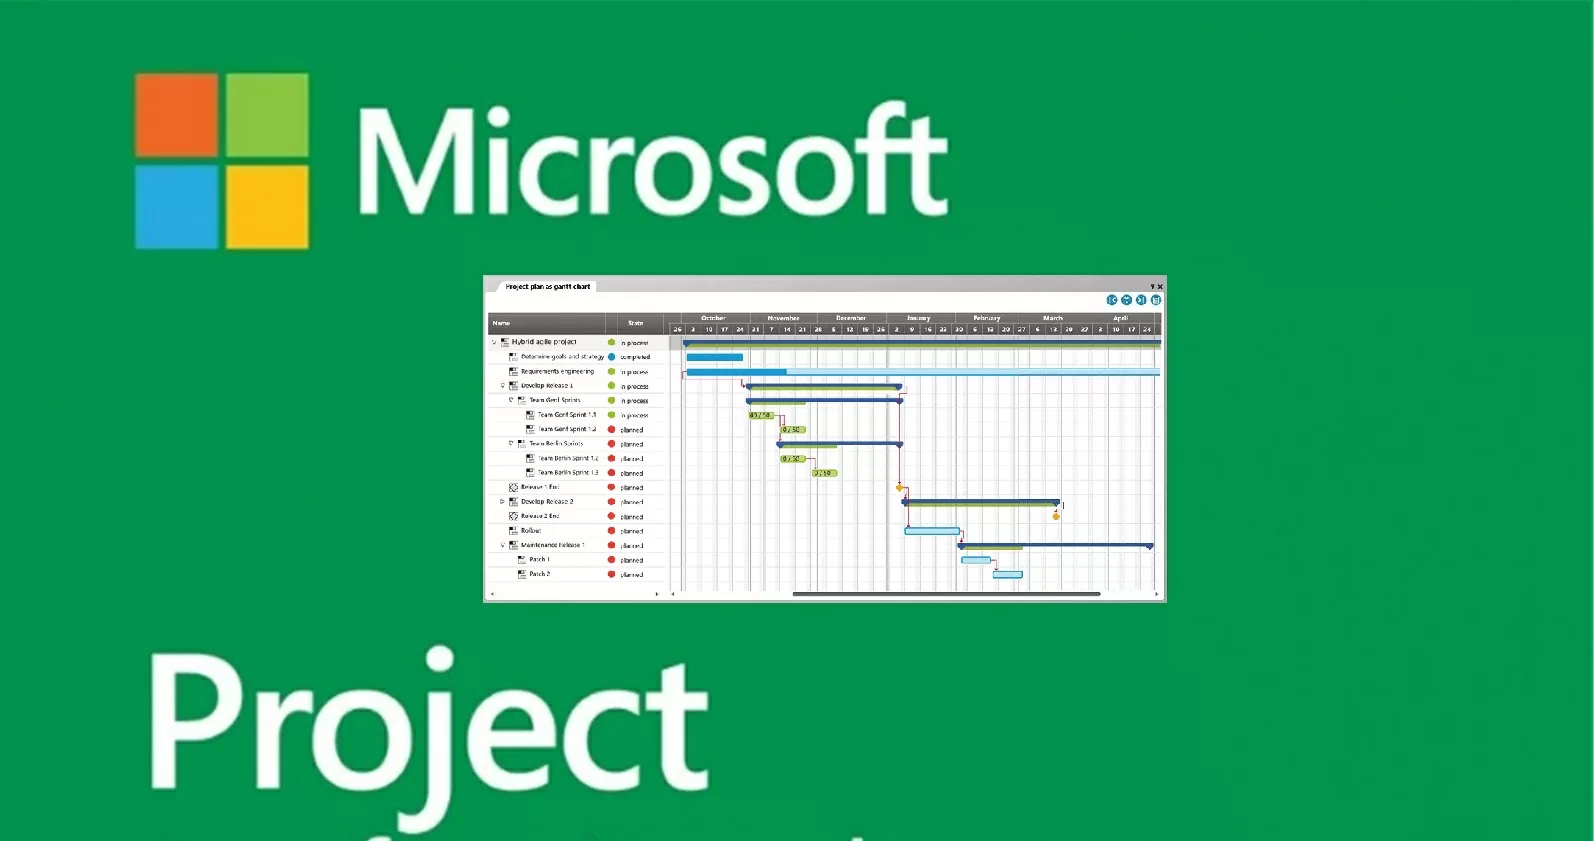 Sådan analyserer du projektforløb i forhold til prognoser i Microsoft Project